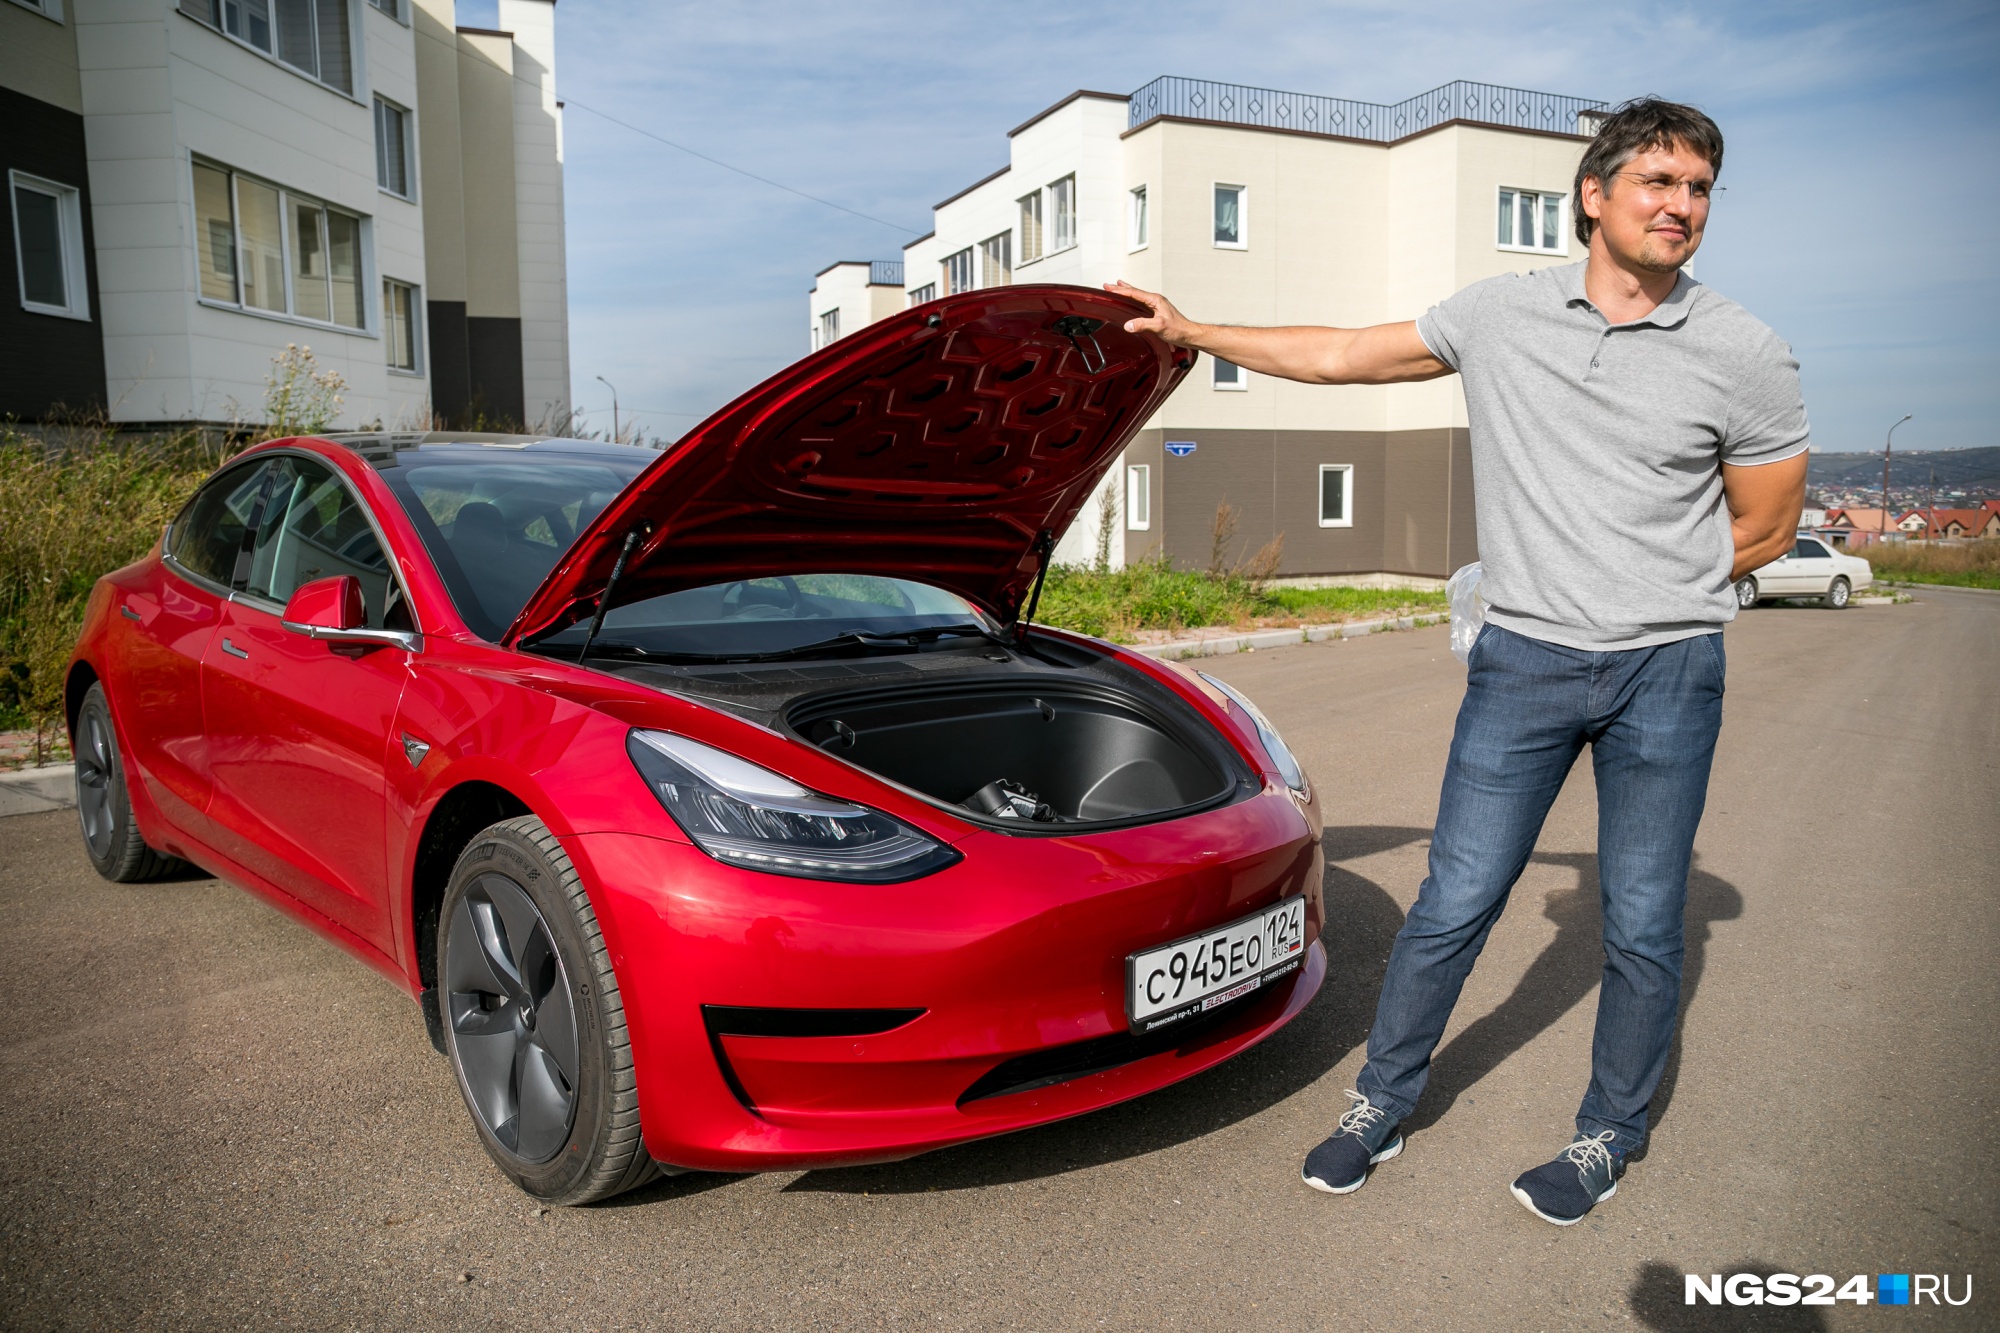 Владелец новой Tesla рассказал об опыте владения электрокаром в Красноярске